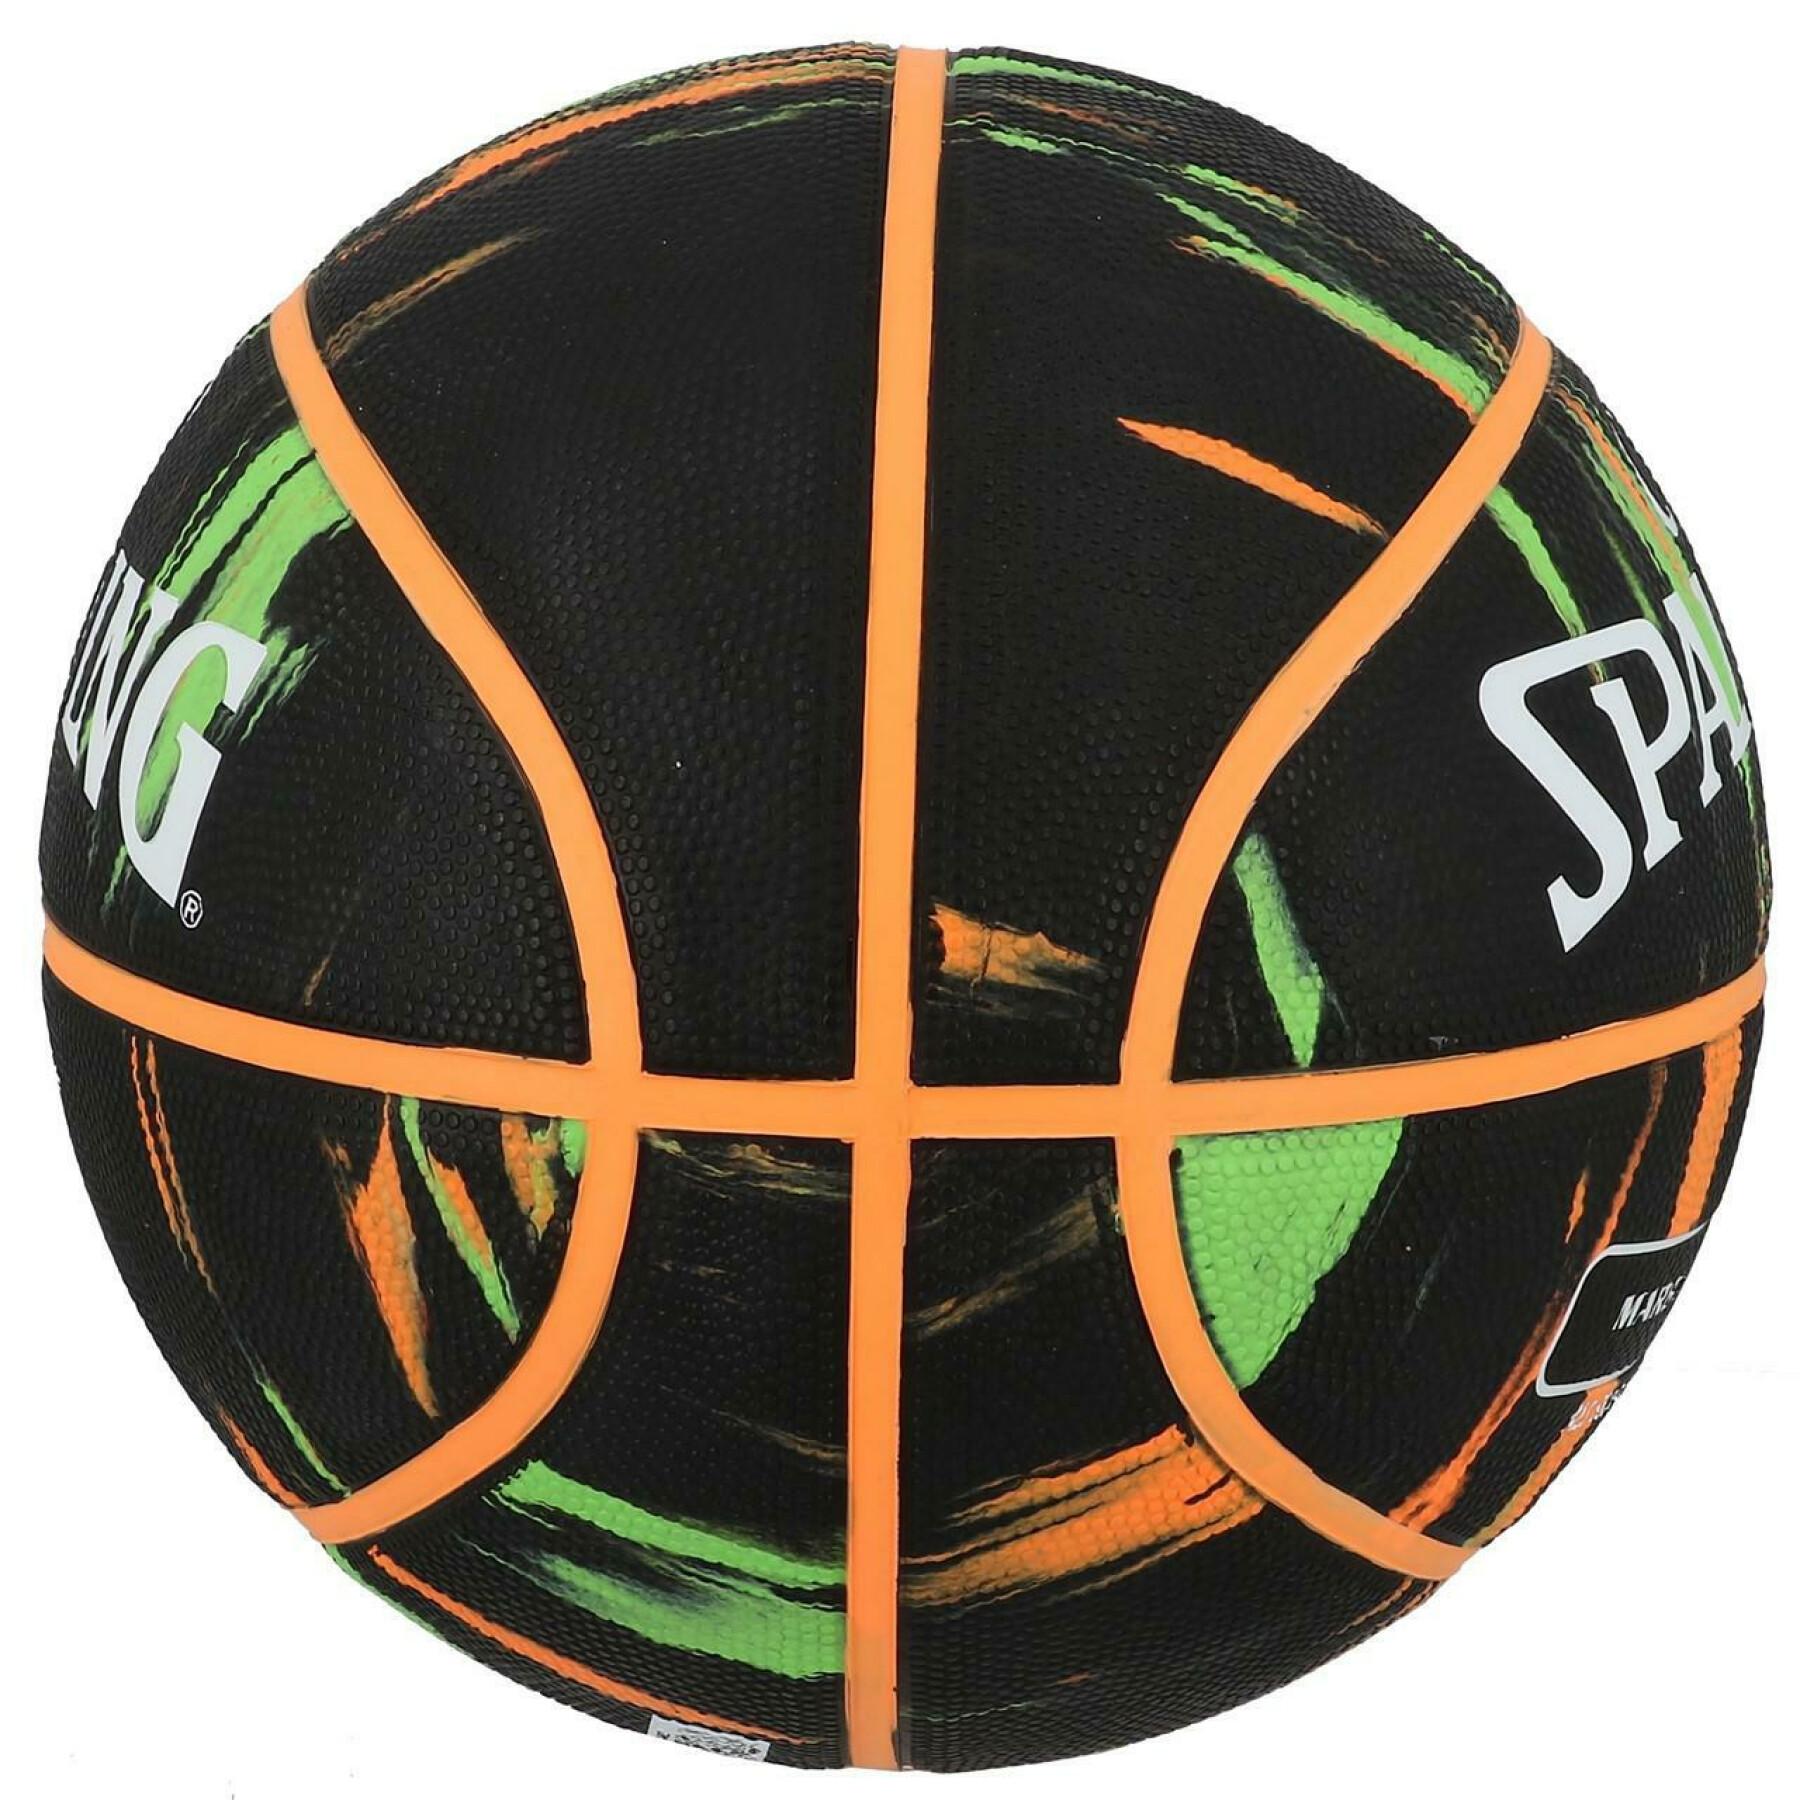 Globo Spalding NBA Marble (83-882z)